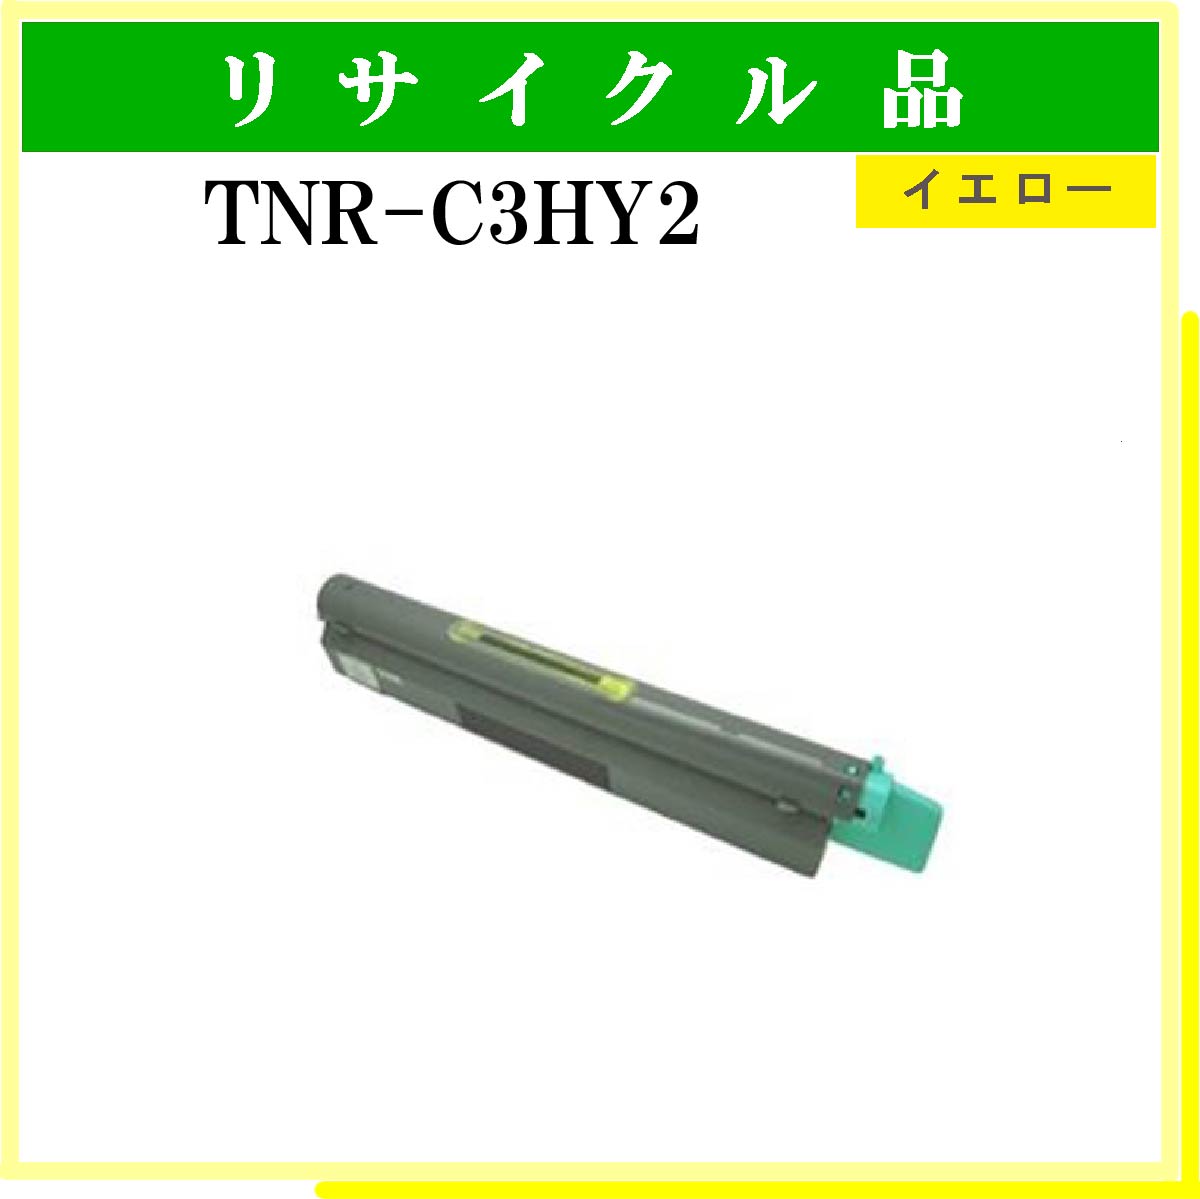 TNR-C3HY2